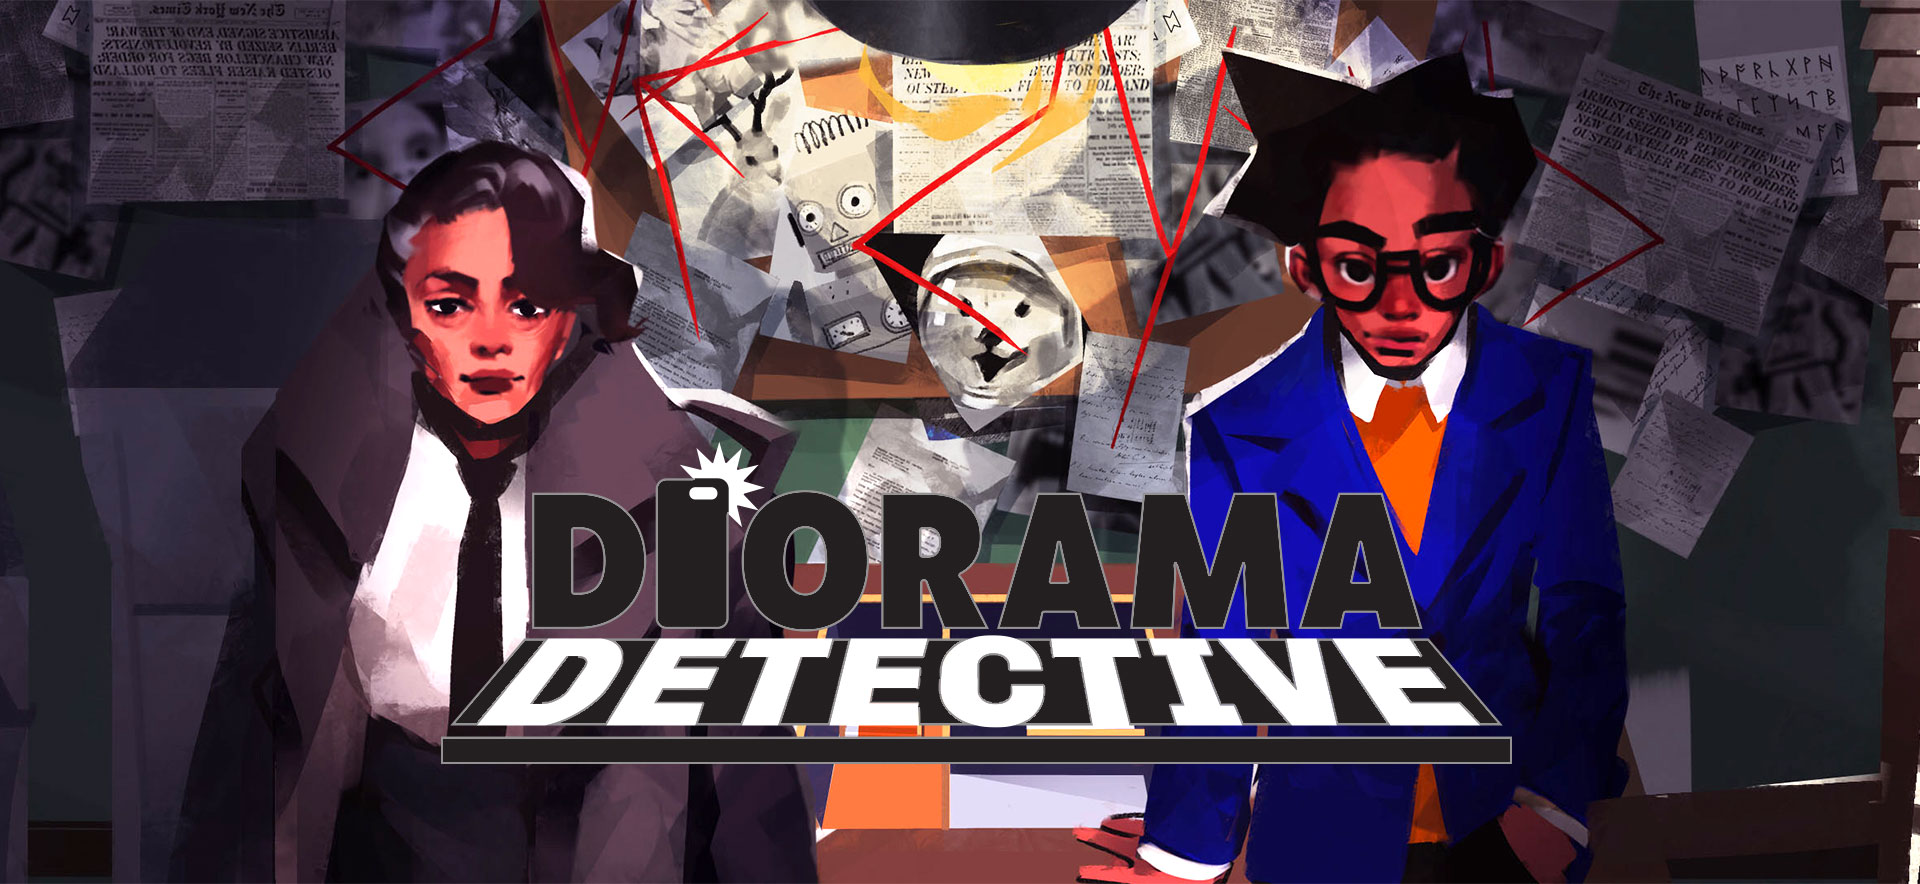 Slutför ett muntert mysterium i 'Detect Diorama', det unika AR-spelet som lanseras nästa vecka